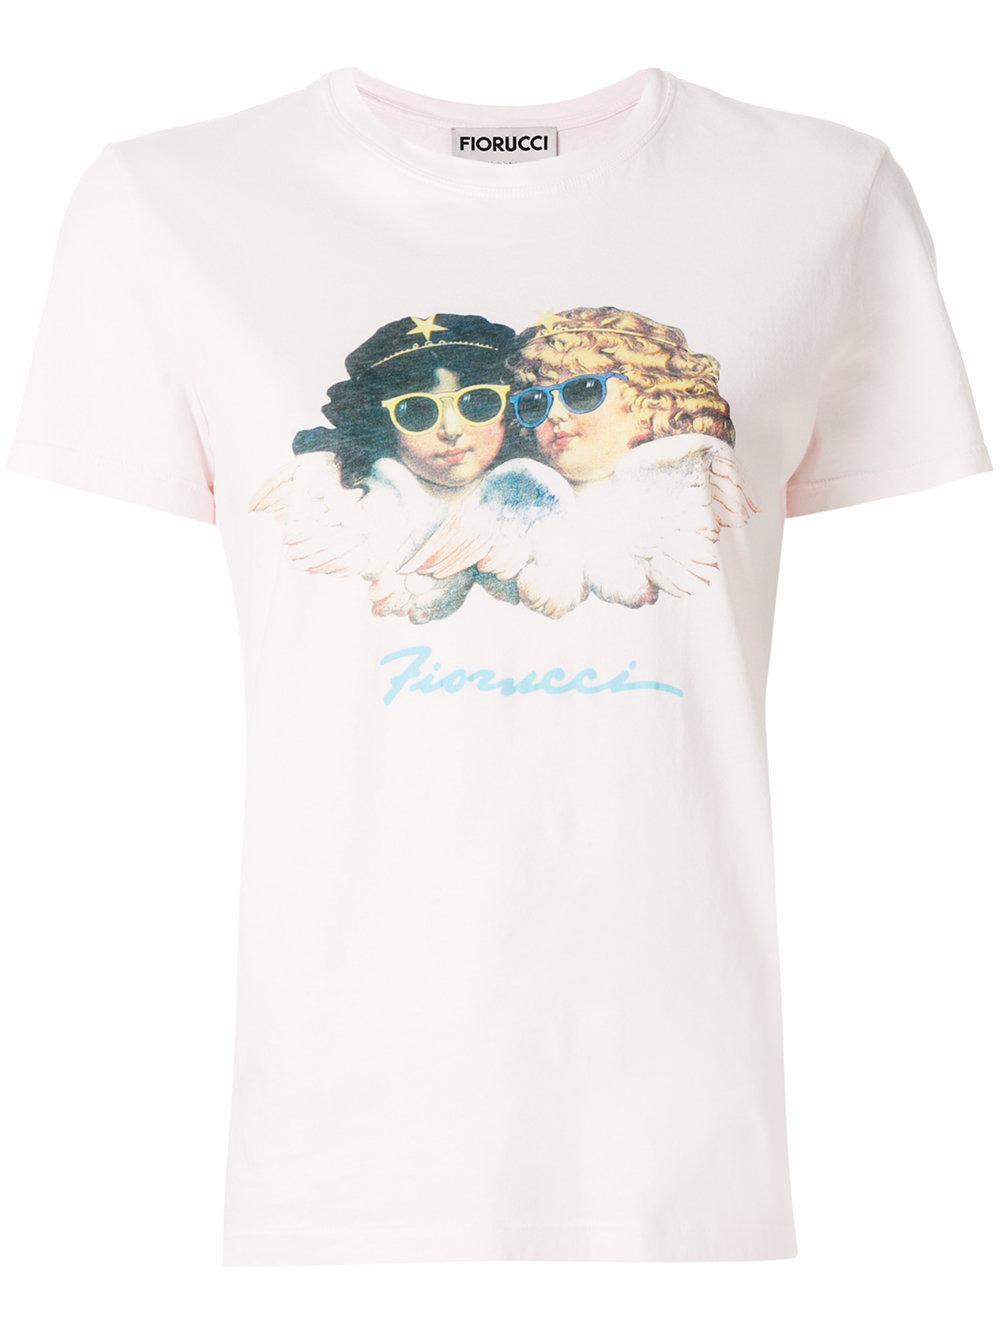 Fiorucci Vintage Angels T-shirt | ModeSens